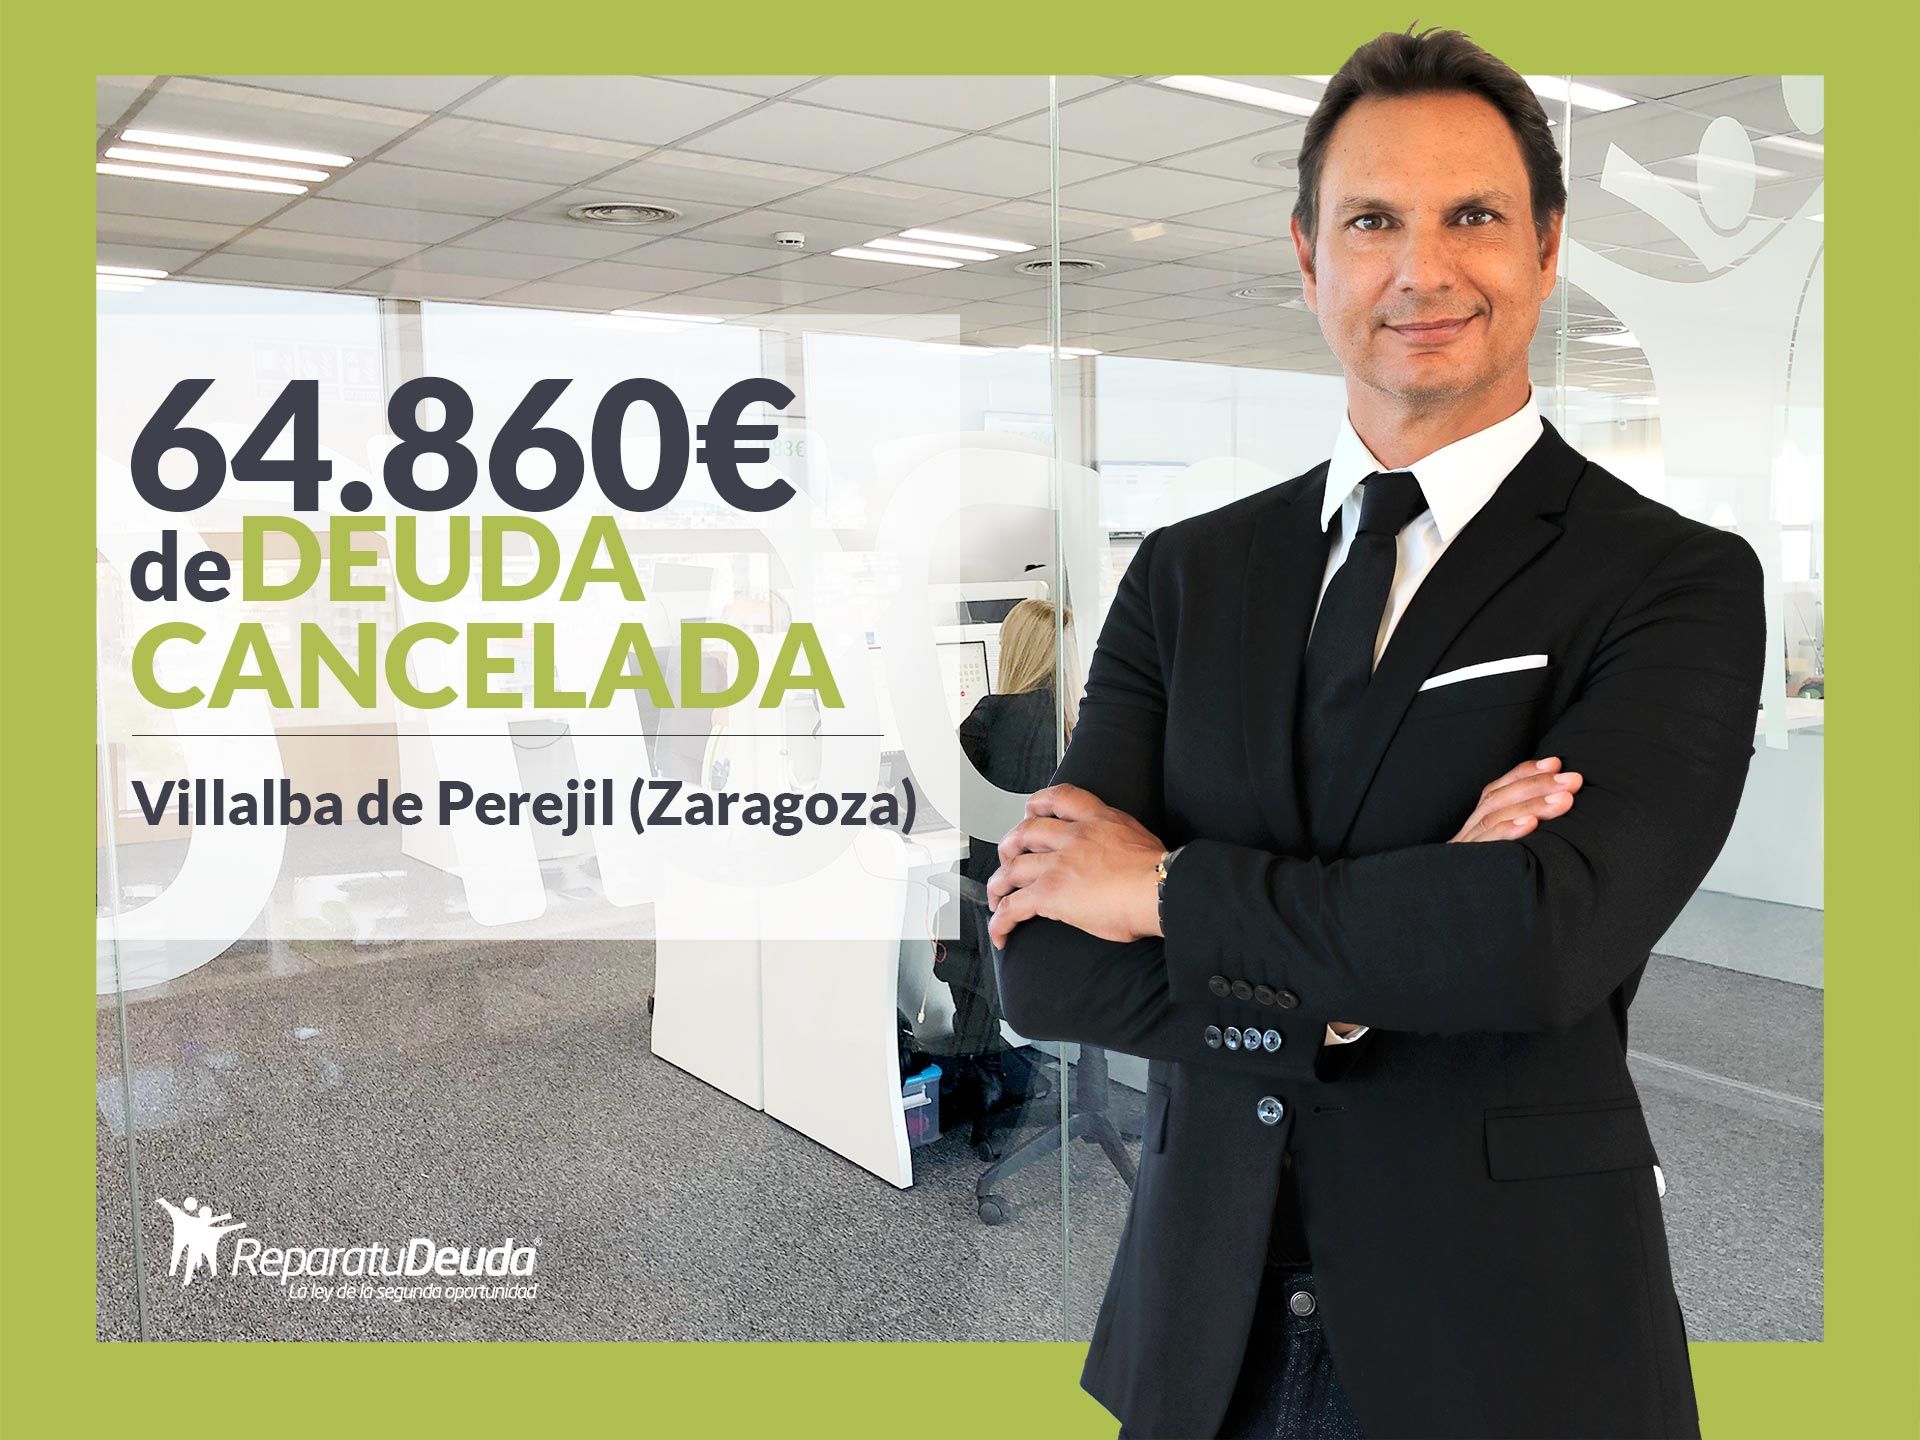 Repara tu Deuda Abogados cancela 64.860? en Villalba de Perejil (Zaragoza) con la Ley de Segunda Oportunidad